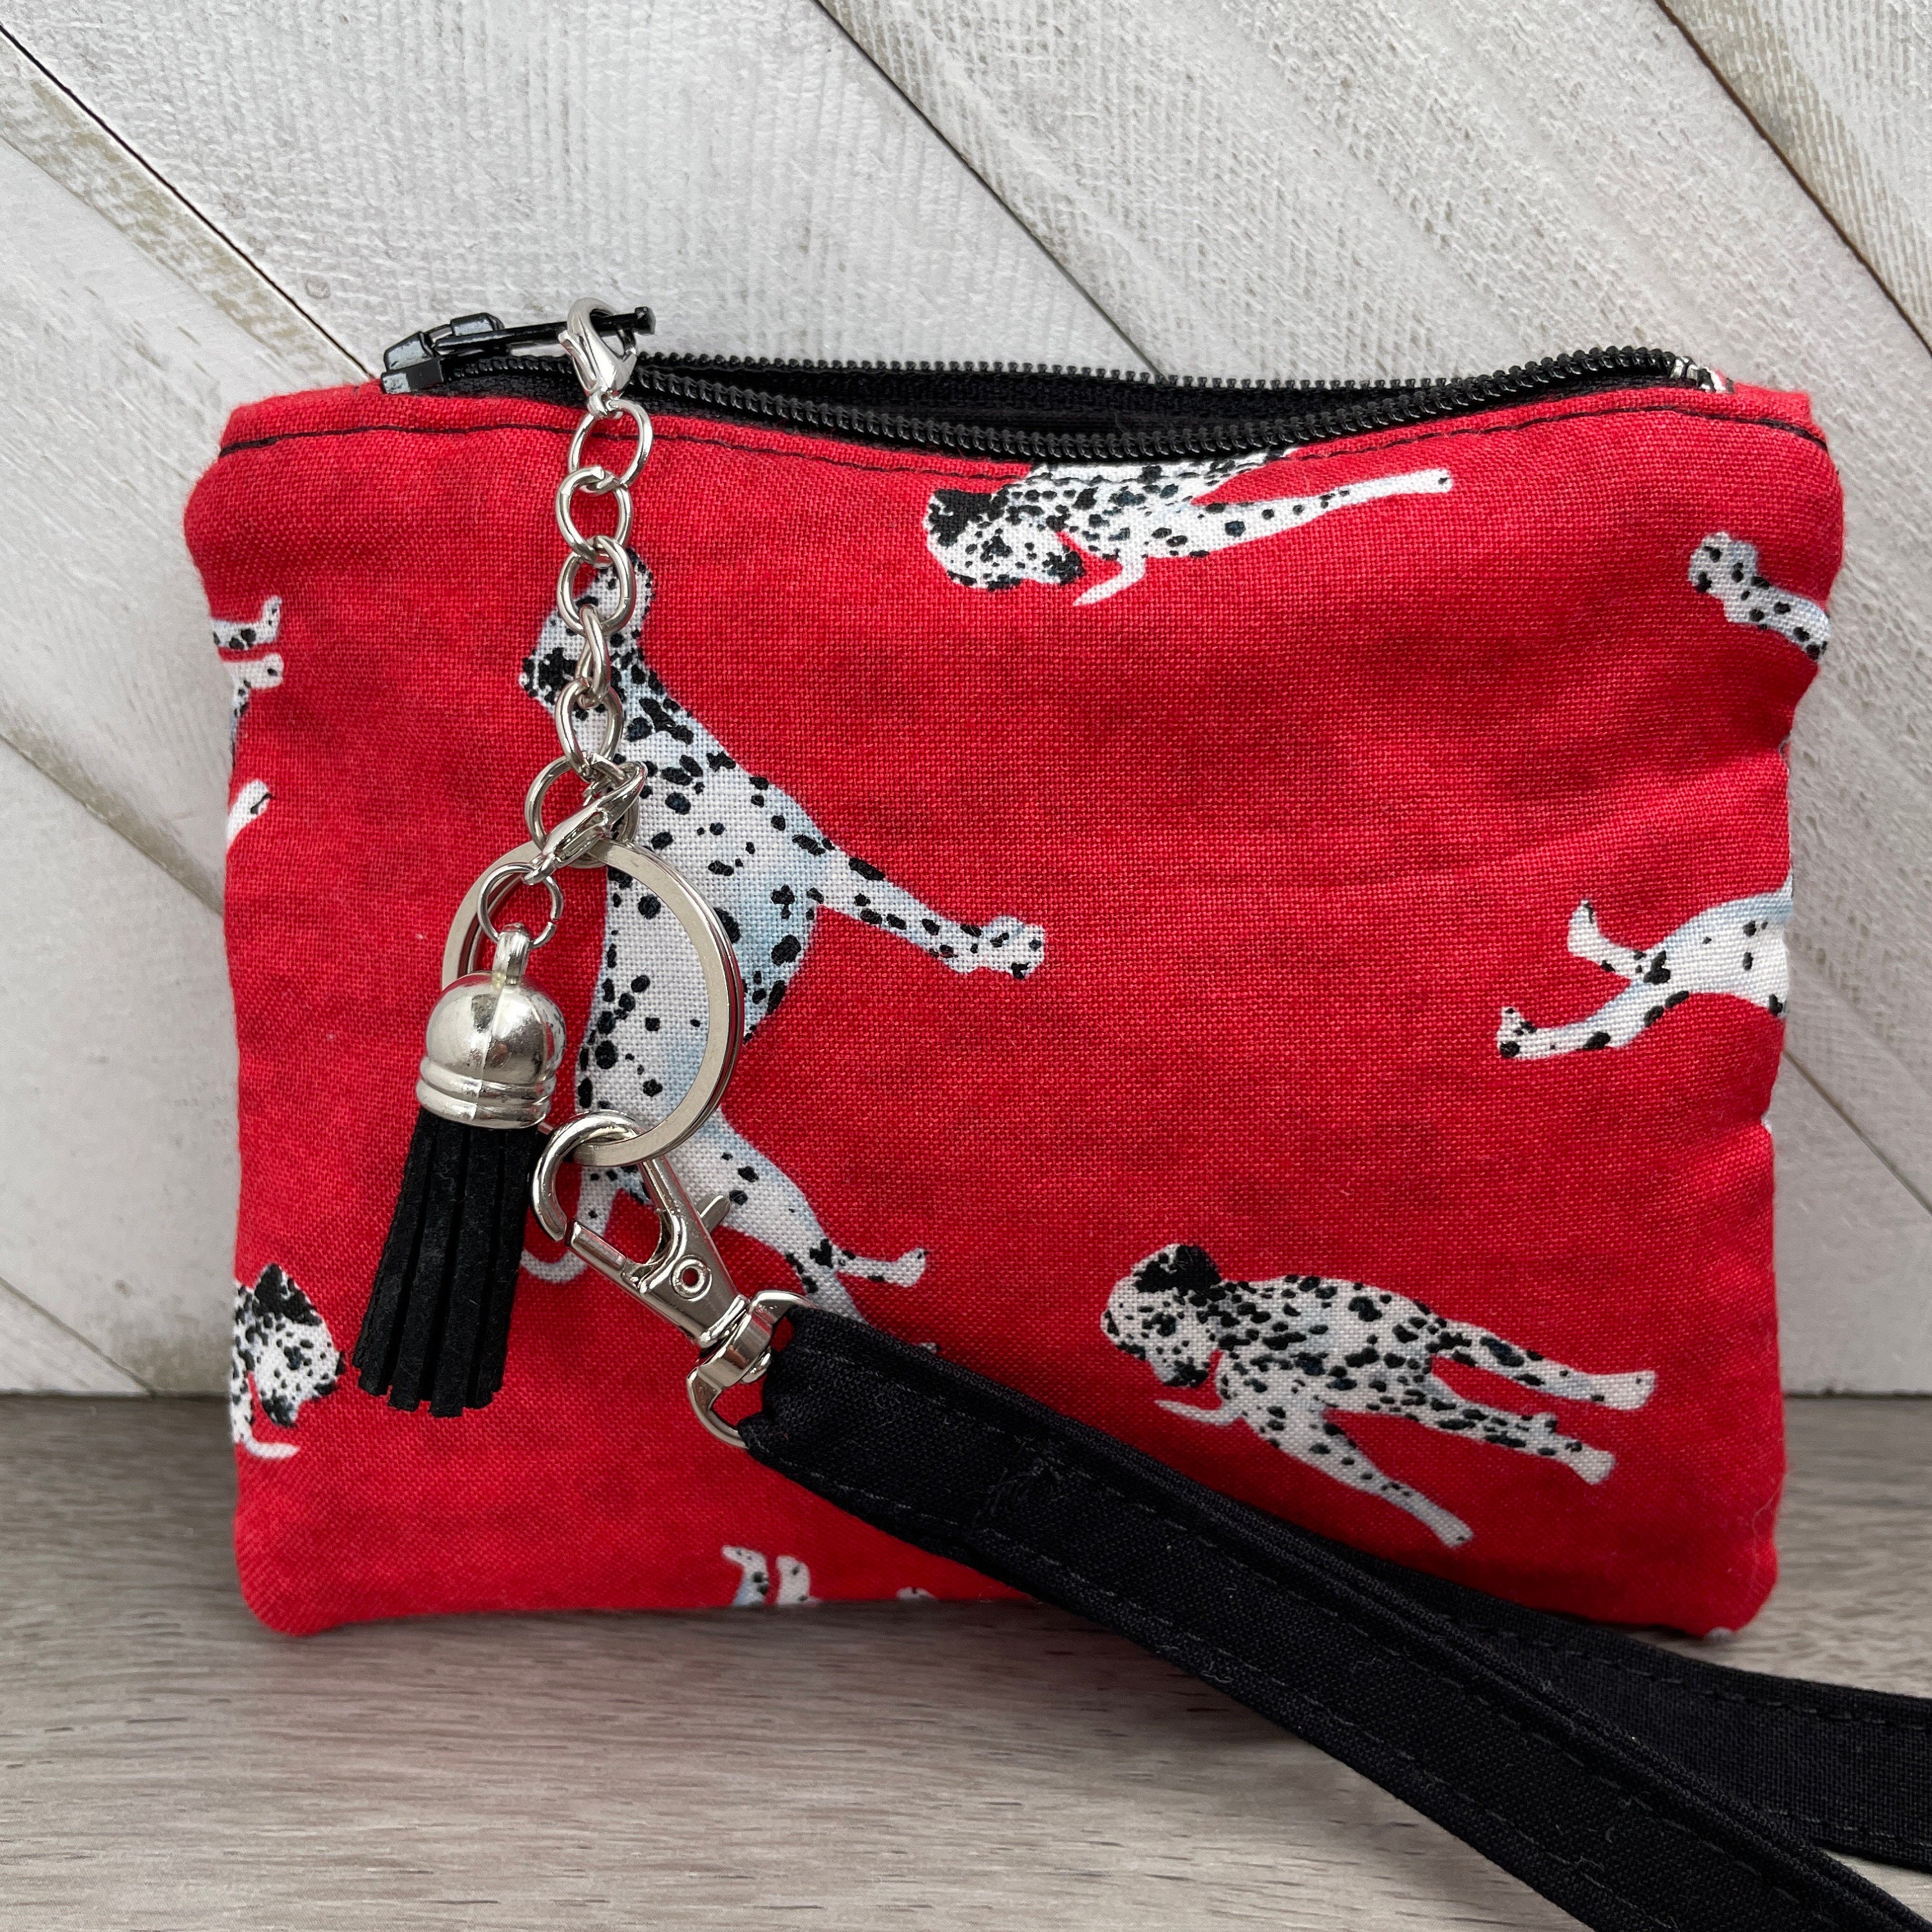 THM Bag Accessories - 💕 Cute 101 Dalmatians pillows for a Louis